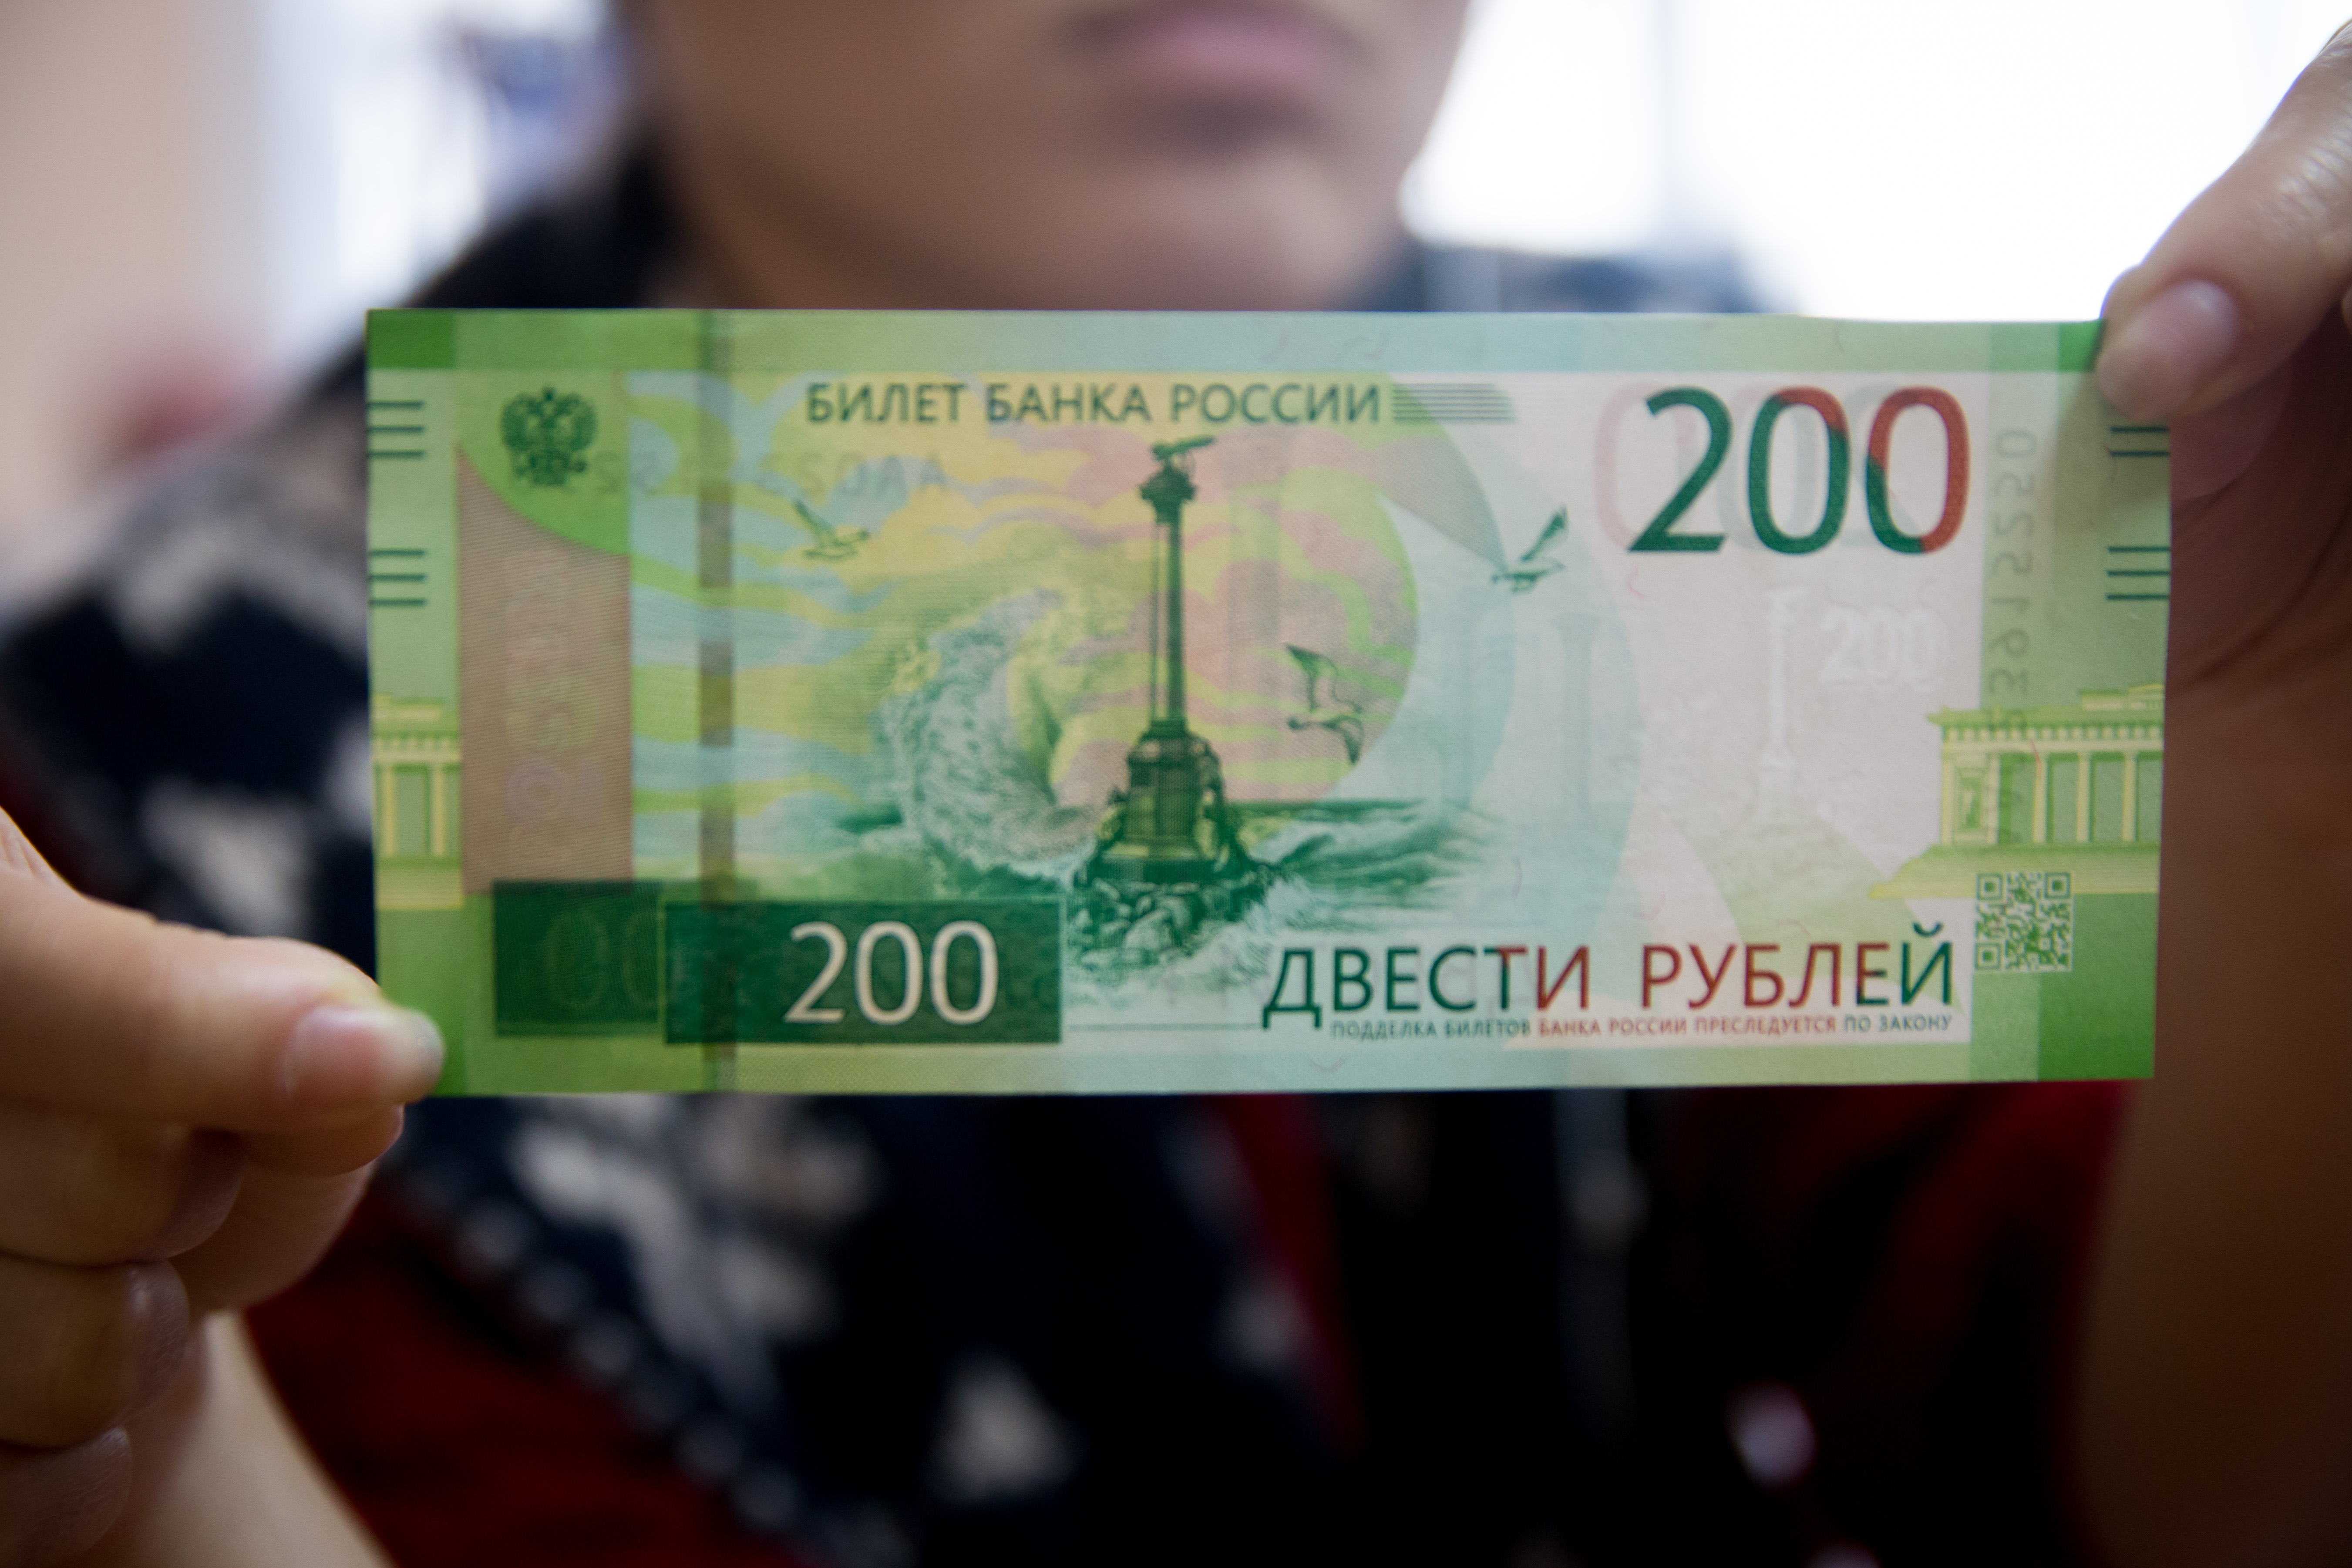 Образец новых купюр рубля